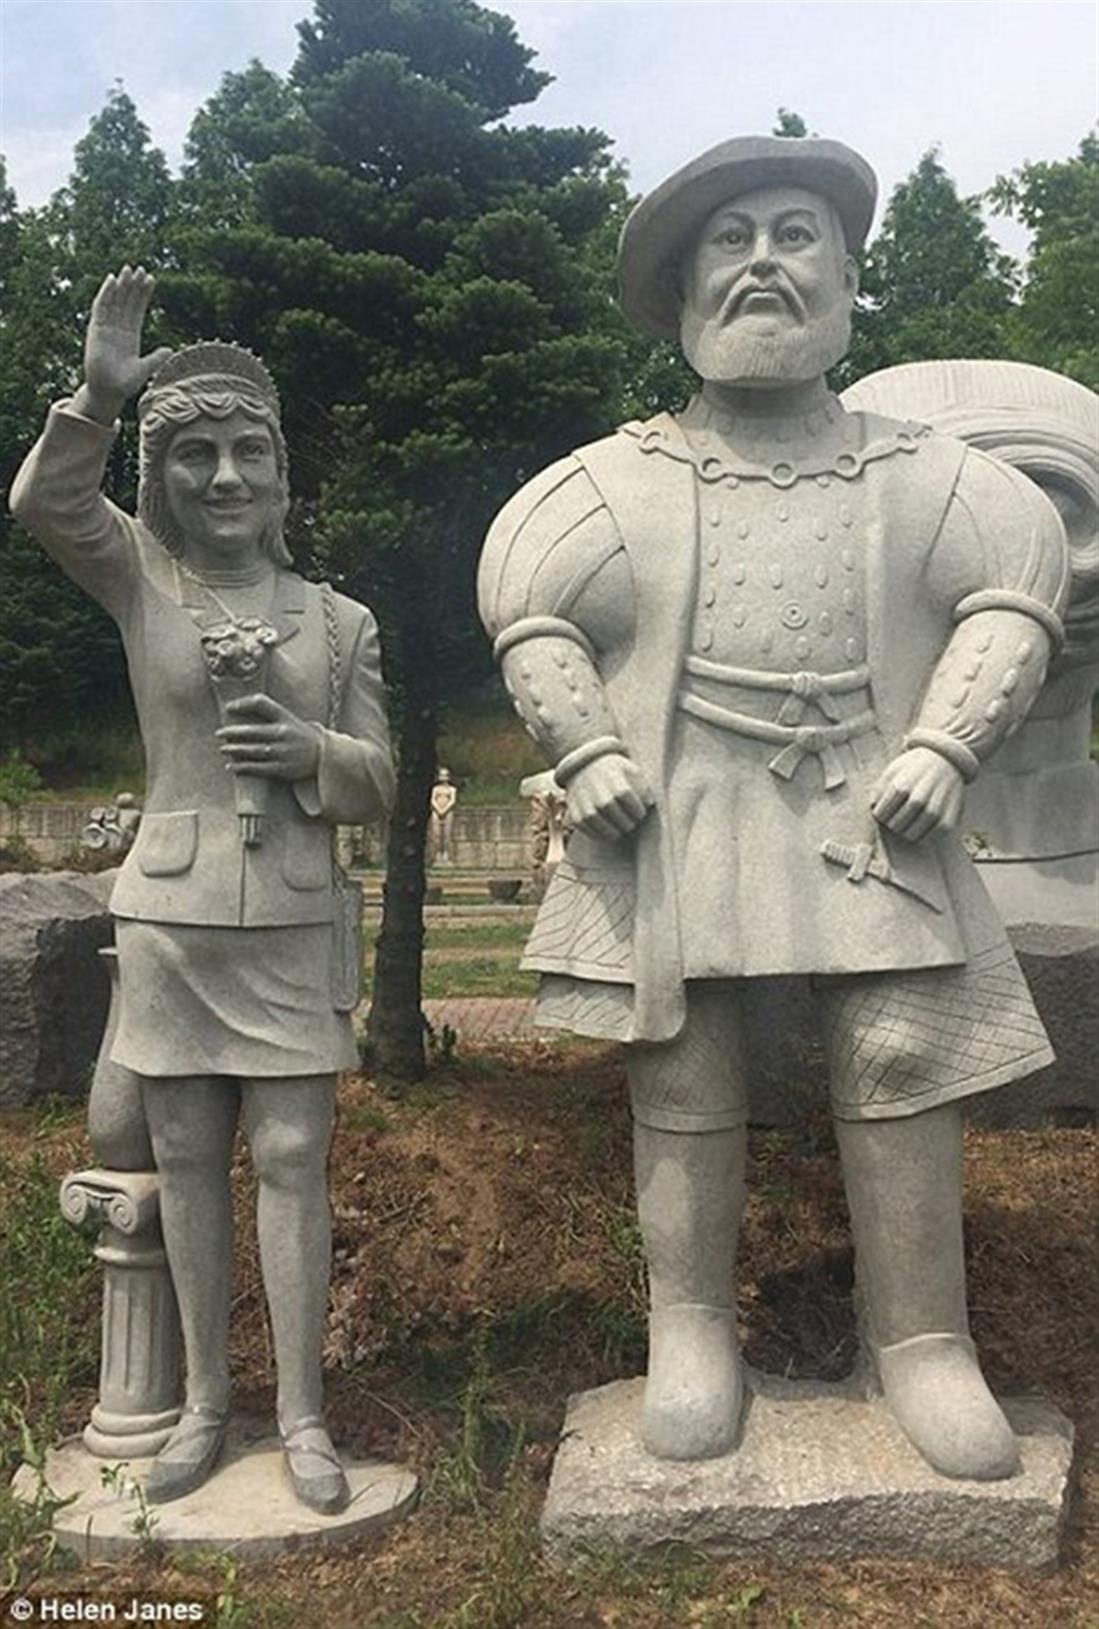 αγάλματα - David Beckham - Hillary Clinton - Michael Jackson - Νότια Κορέα - μουσείο αγαλμάτων